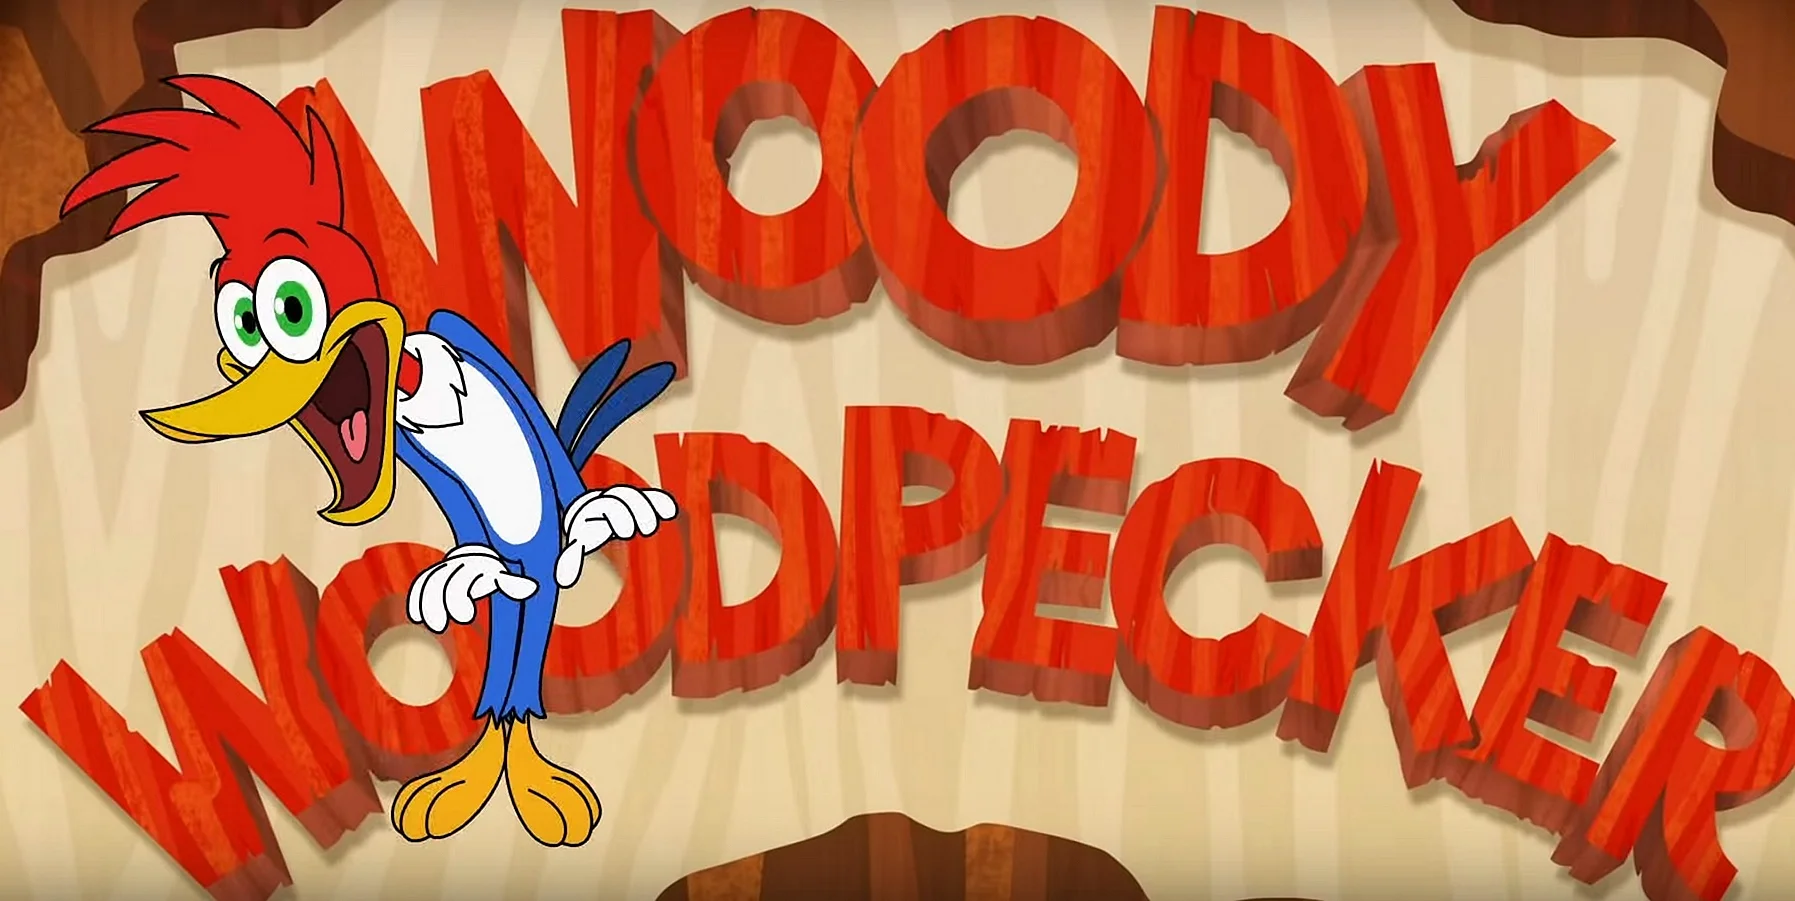 Woody Woodpecker Background Wallpaper